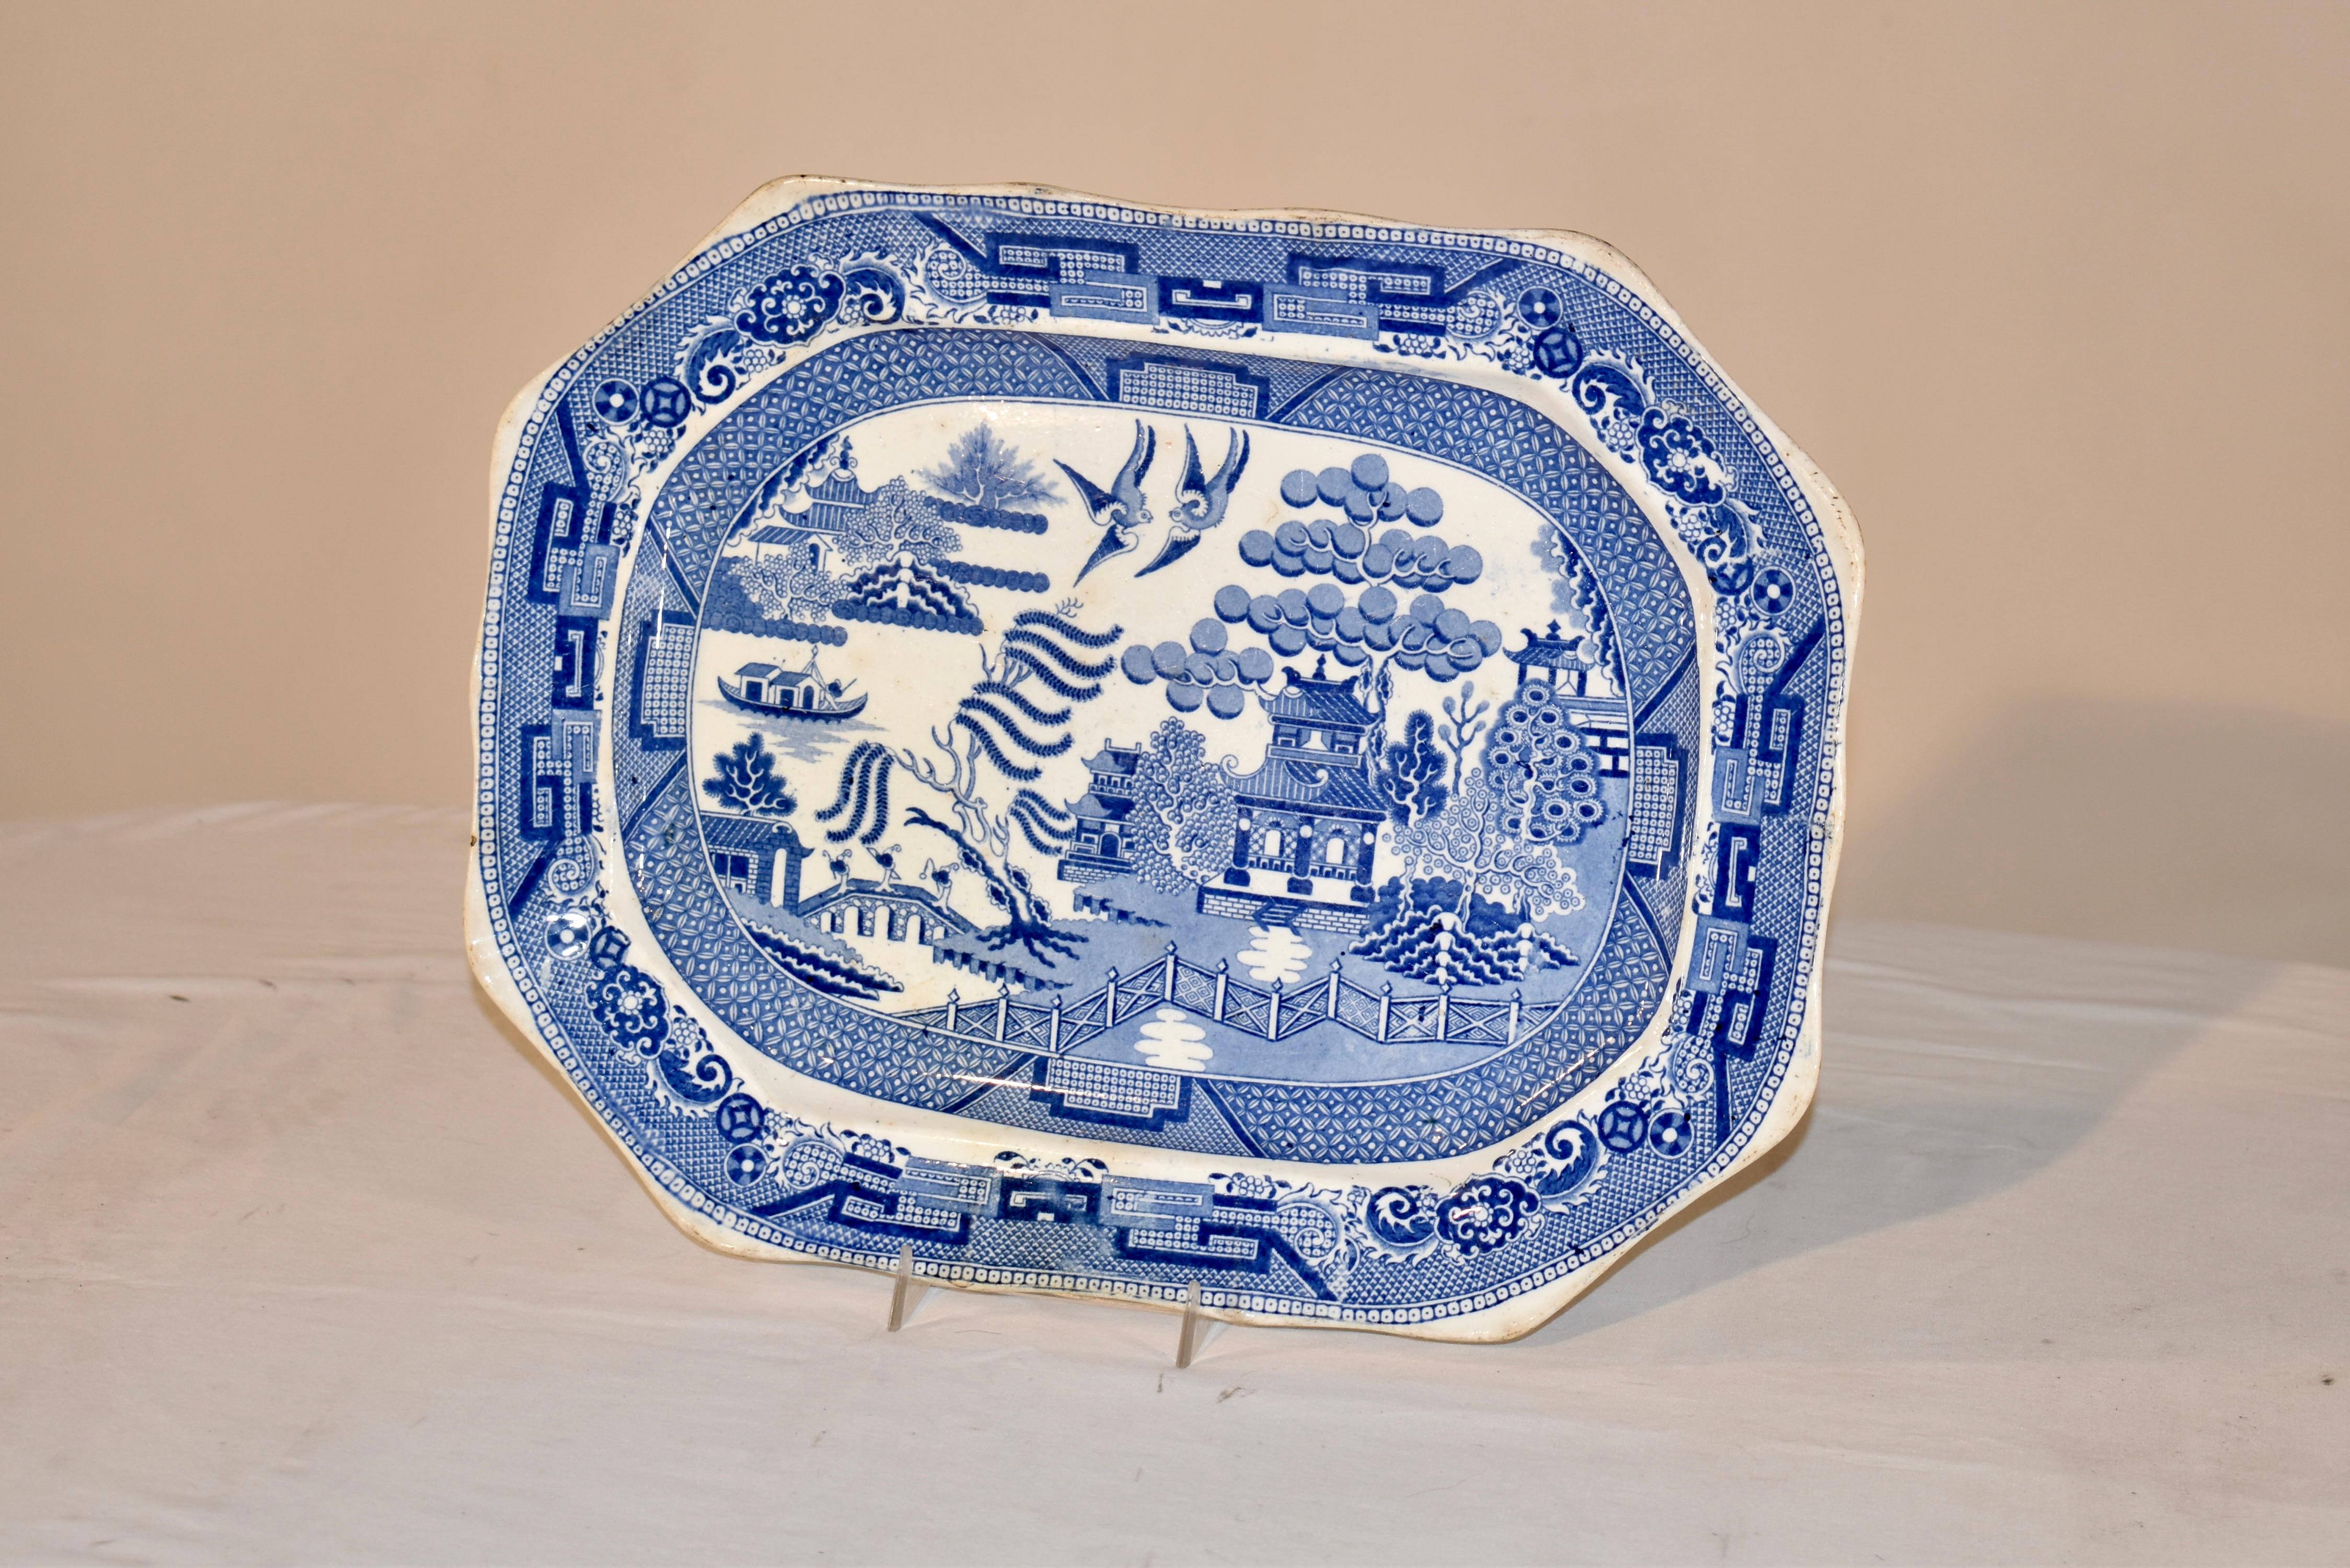 Porzellanteller aus dem 19. Jahrhundert, Davenport zugeschrieben.  Diese Platte ist mit dem sehr begehrten Blue Willow-Muster verziert.  Das Besondere an der Platte ist, dass sie mit einem hübsch geformten Rand versehen ist, der das Design noch